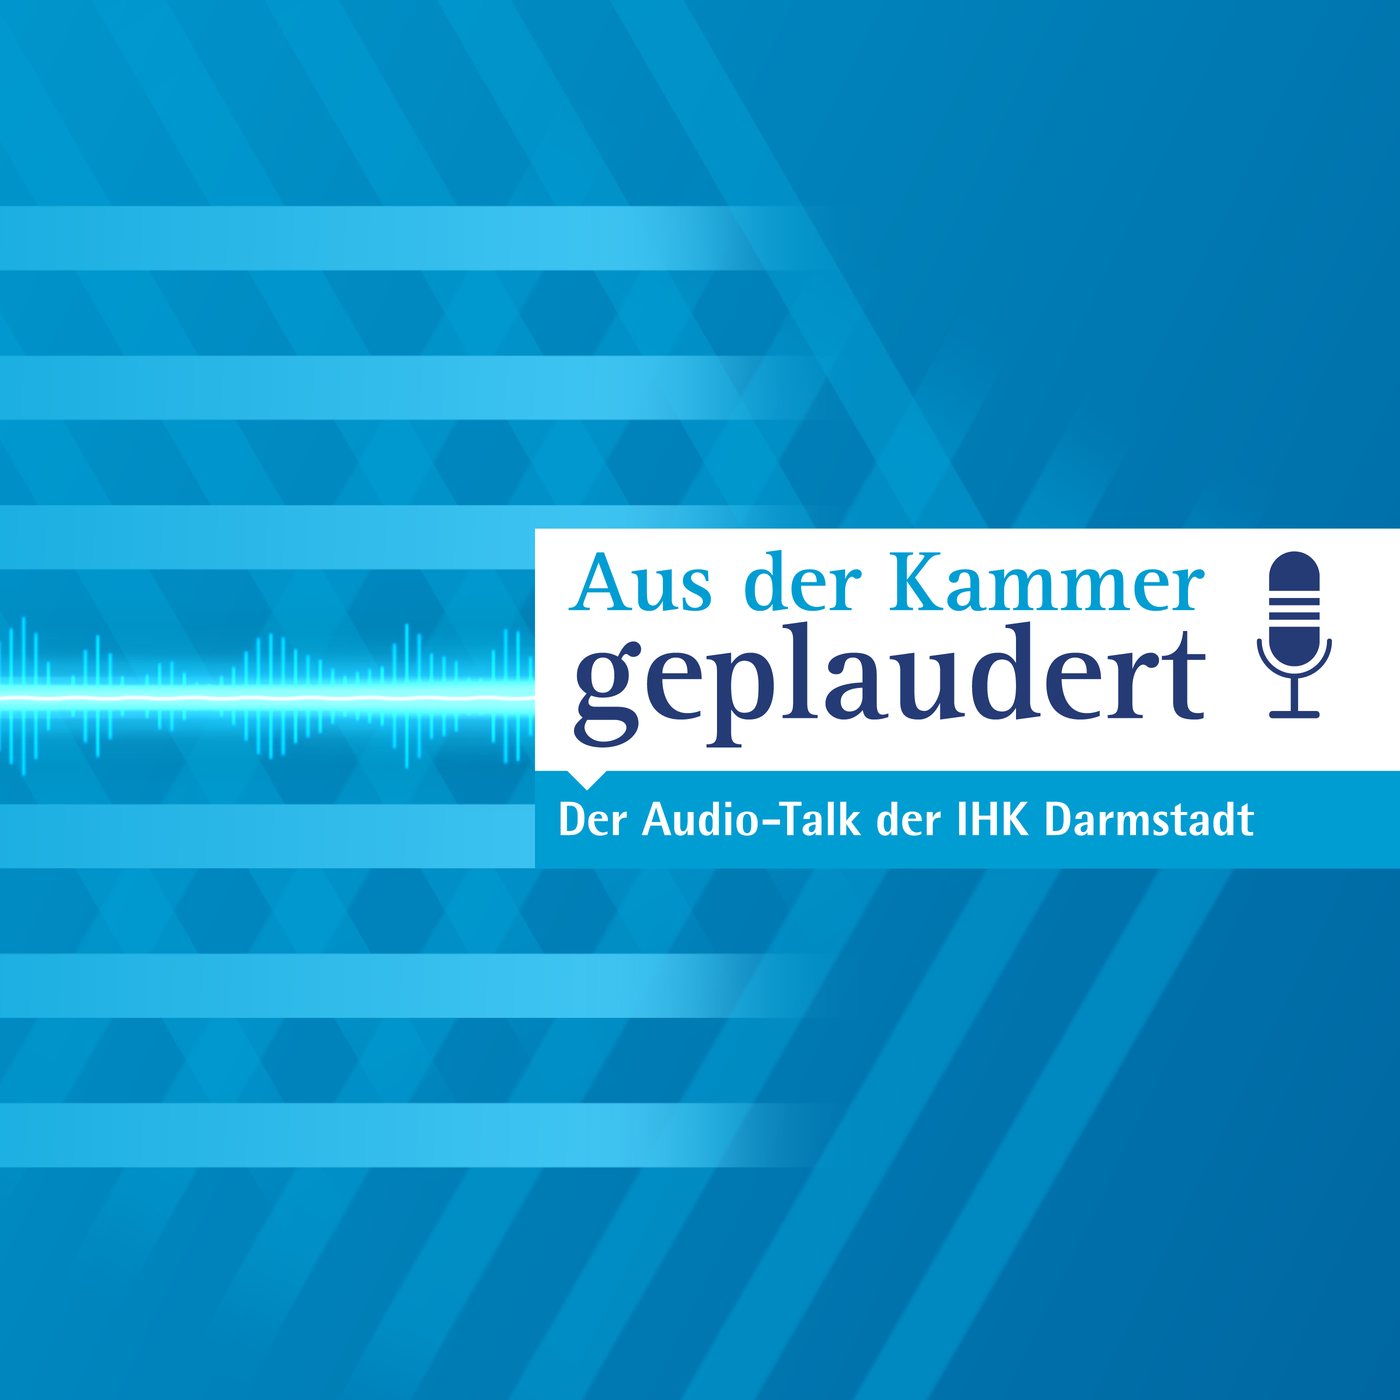 Aus der Kammer geplaudert - der Audio-Talk der IHK Darmstadt